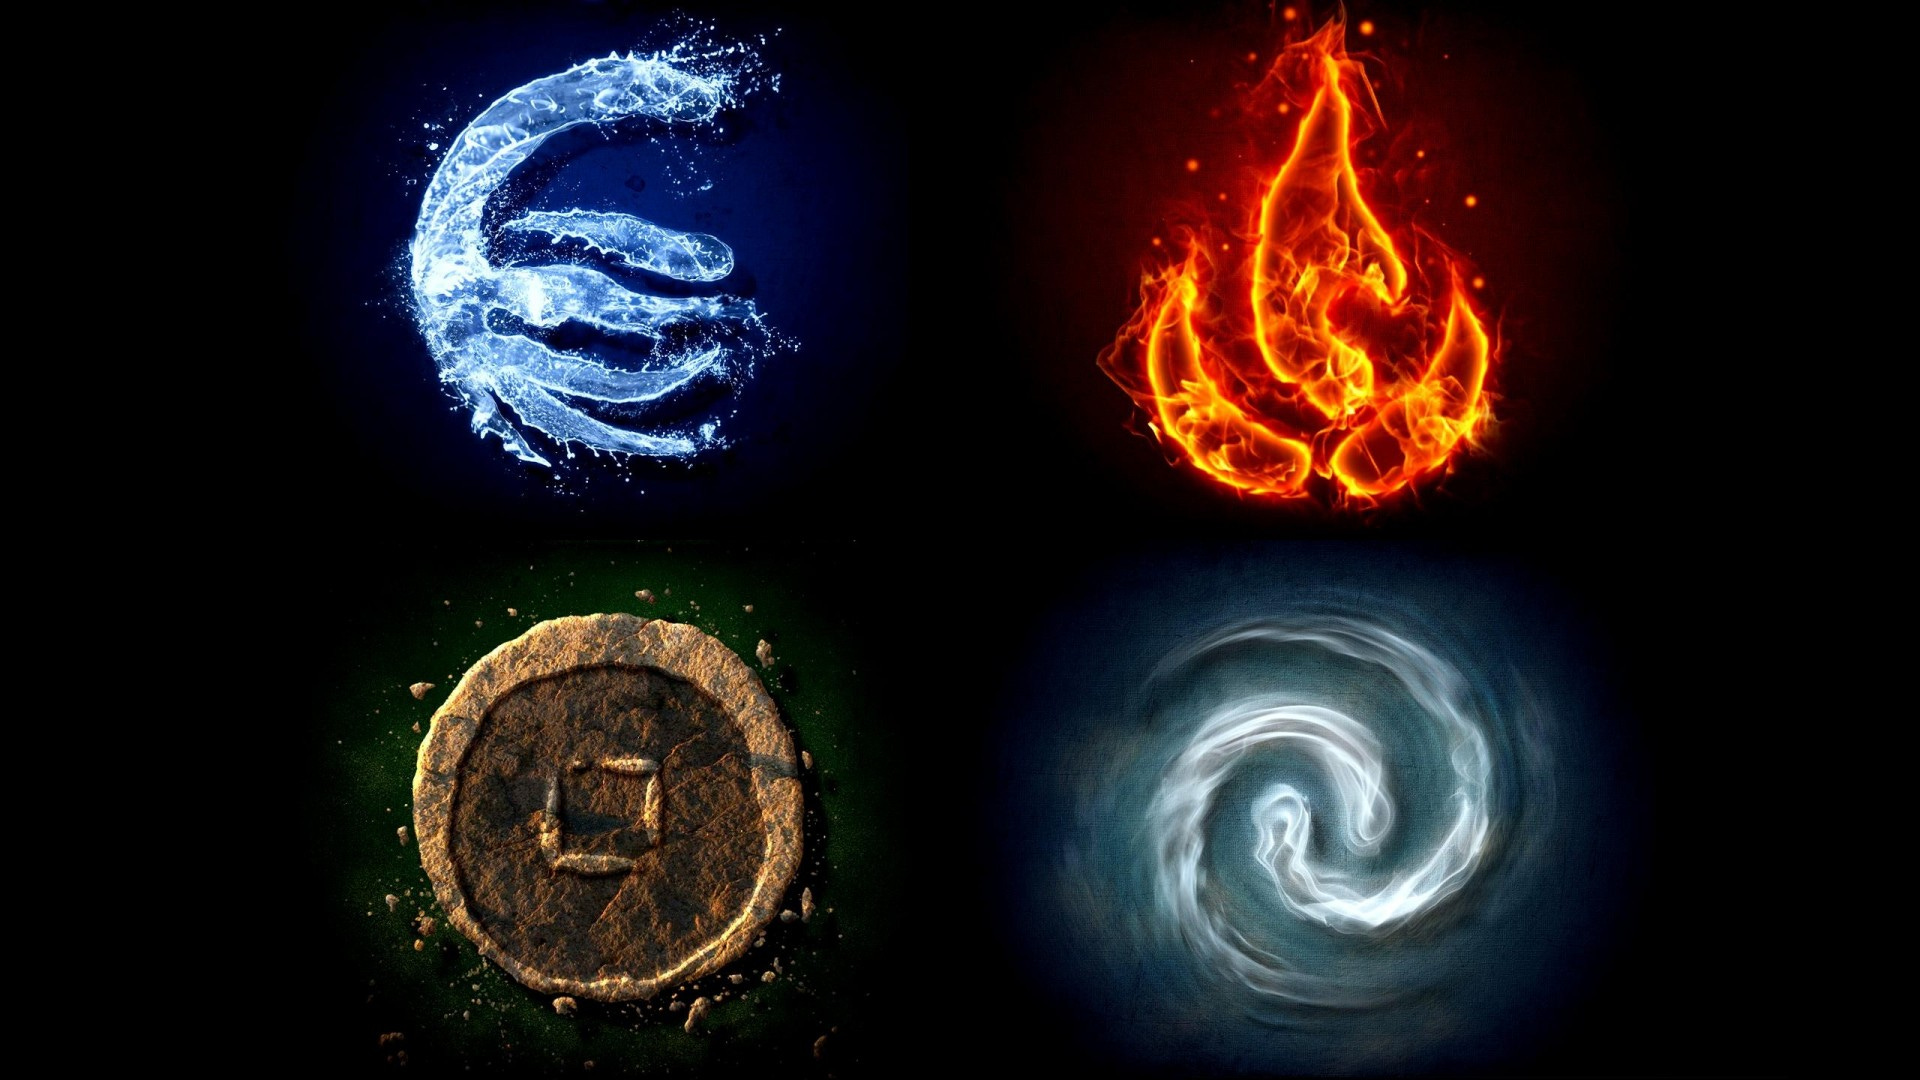 4)Four Elements